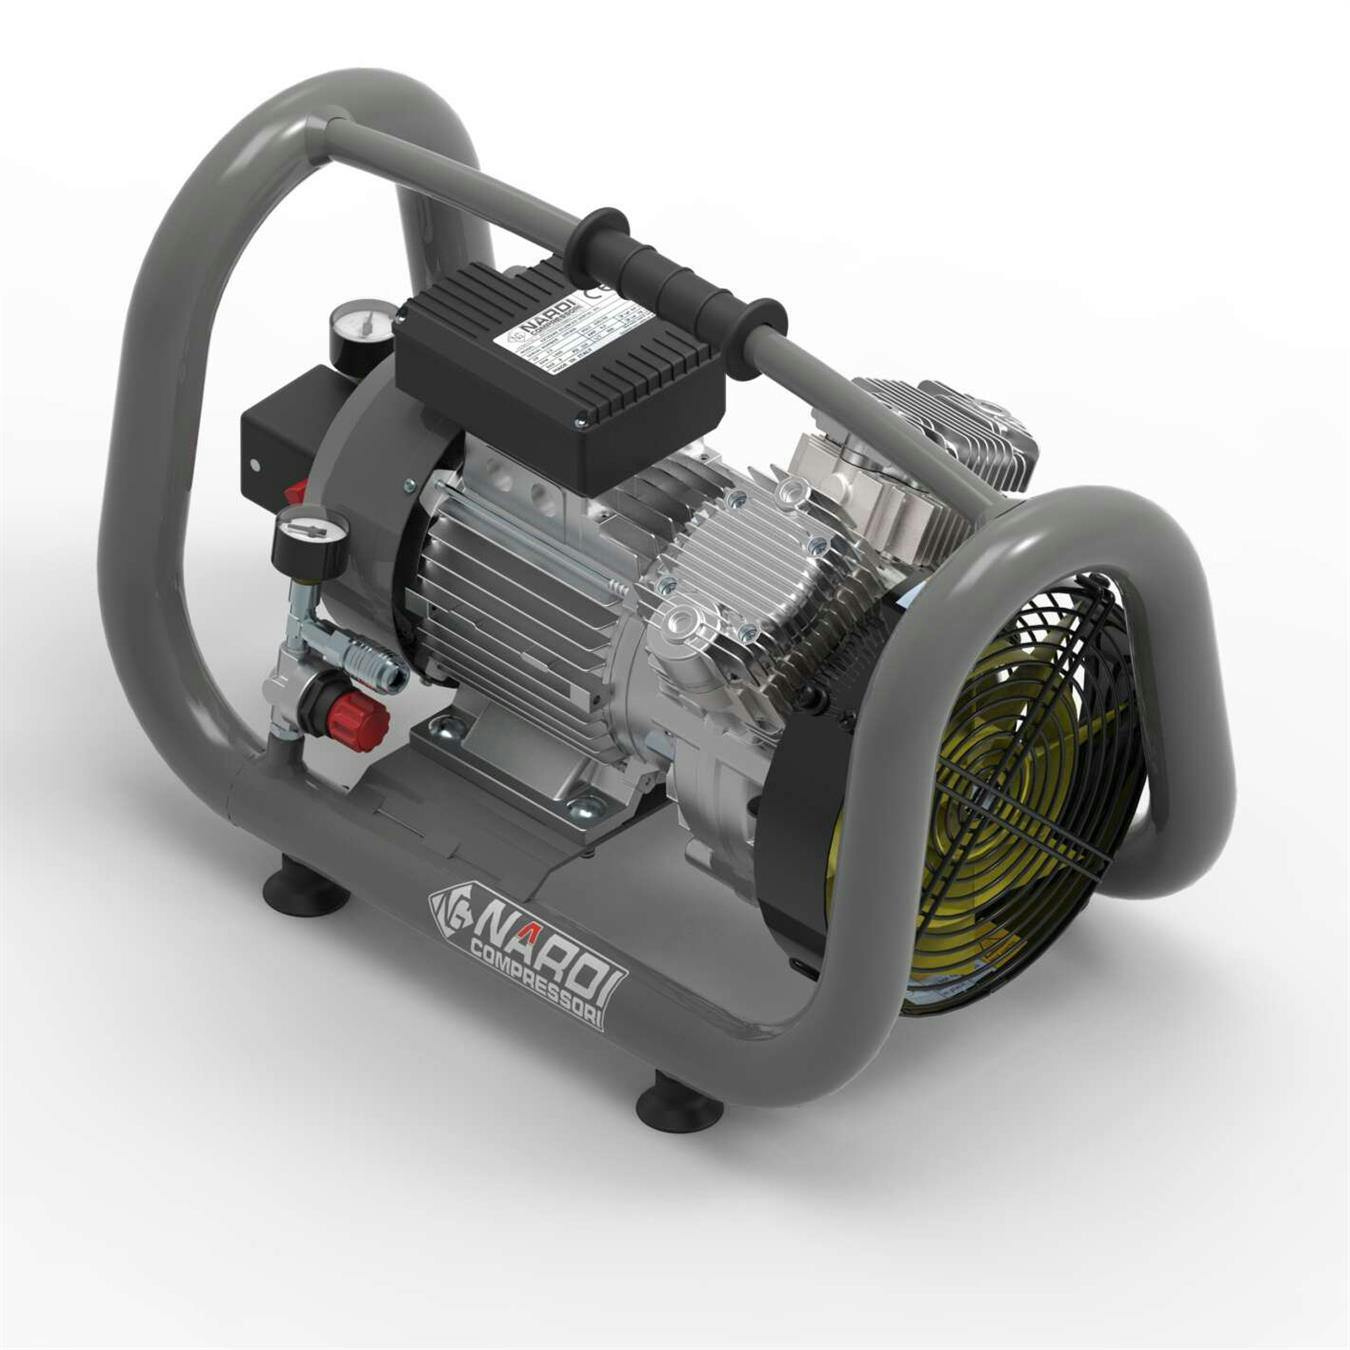 Bygg-kompressor Nardi Extreme 3T oljefri 260l/min 10bar 5l/tank 2hk